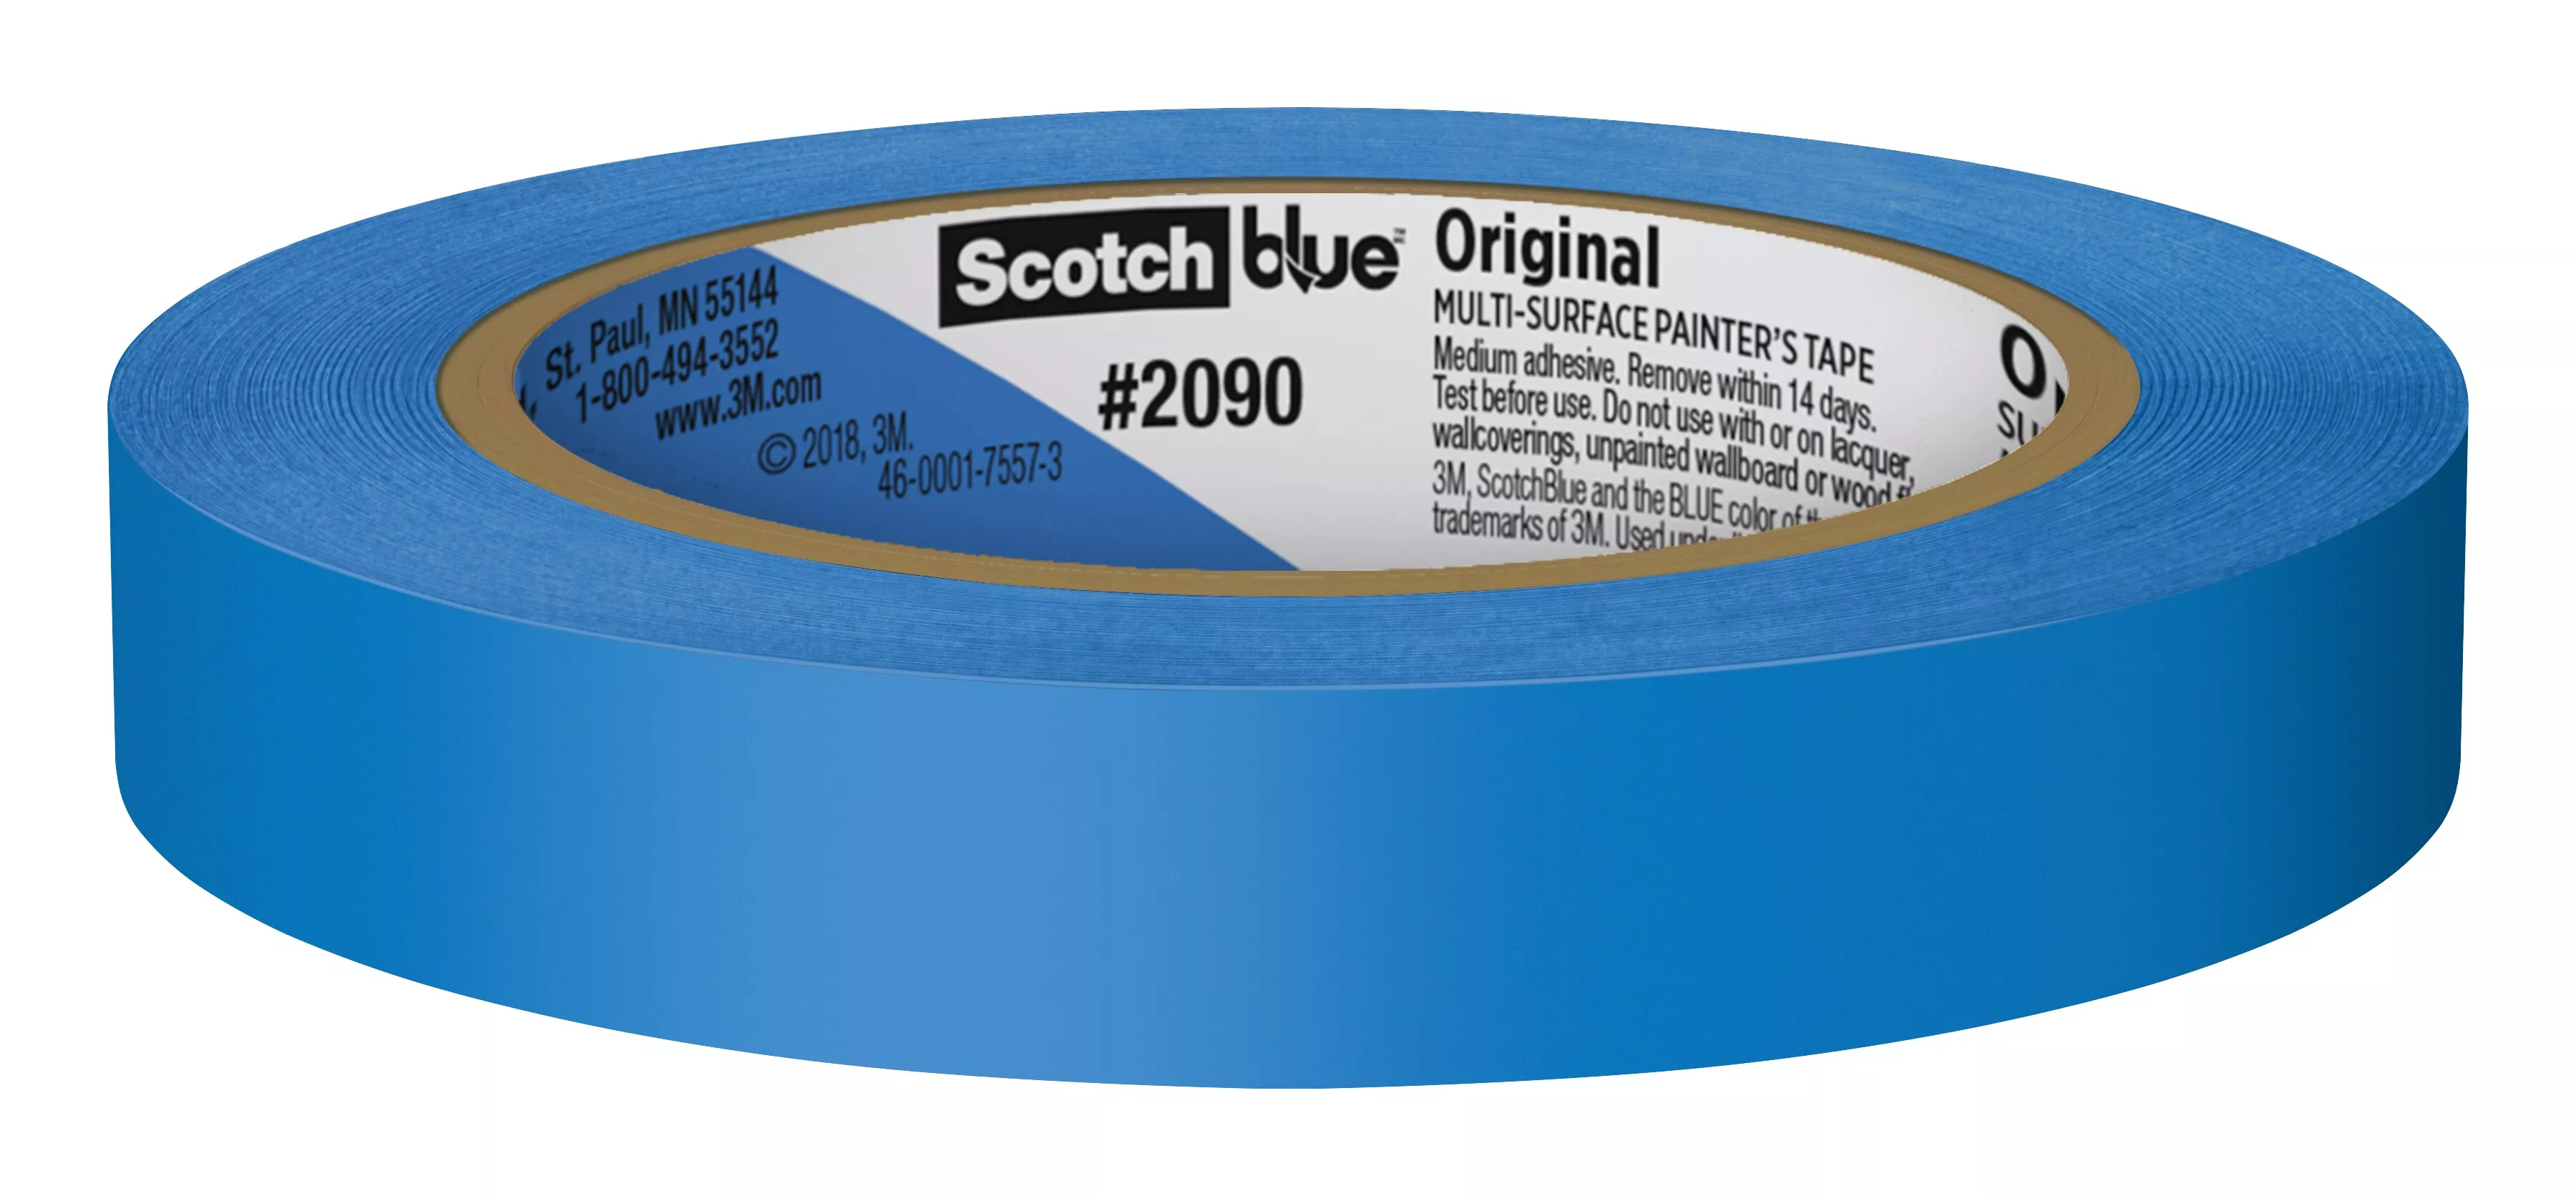 SKU 7100187170 | ScotchBlue™ Original Painter's Tape 2090-18EC